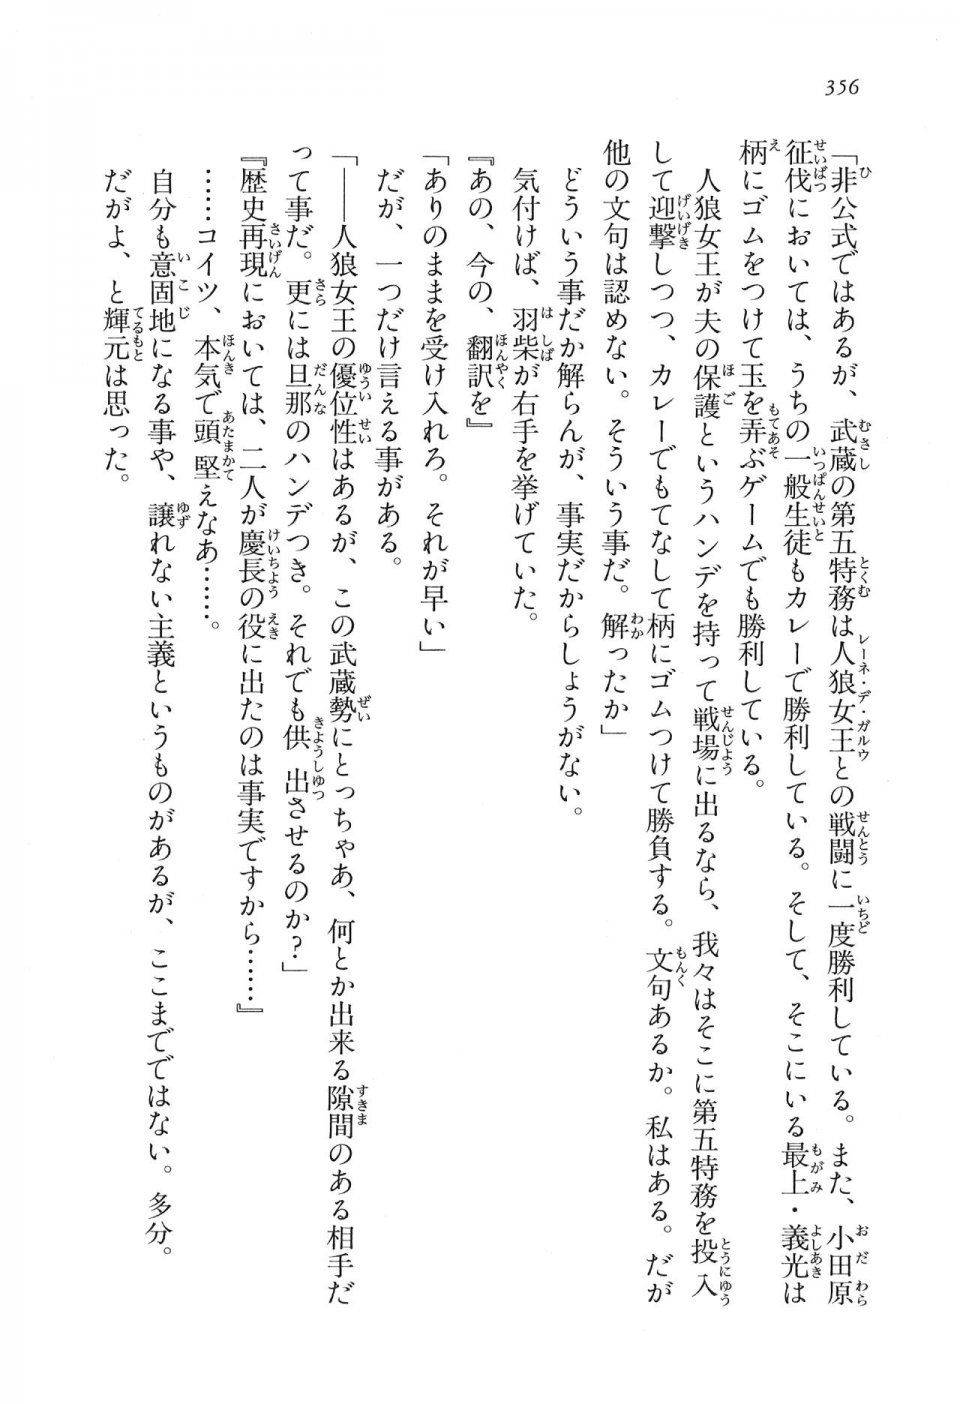 Kyoukai Senjou no Horizon LN Vol 16(7A) - Photo #356